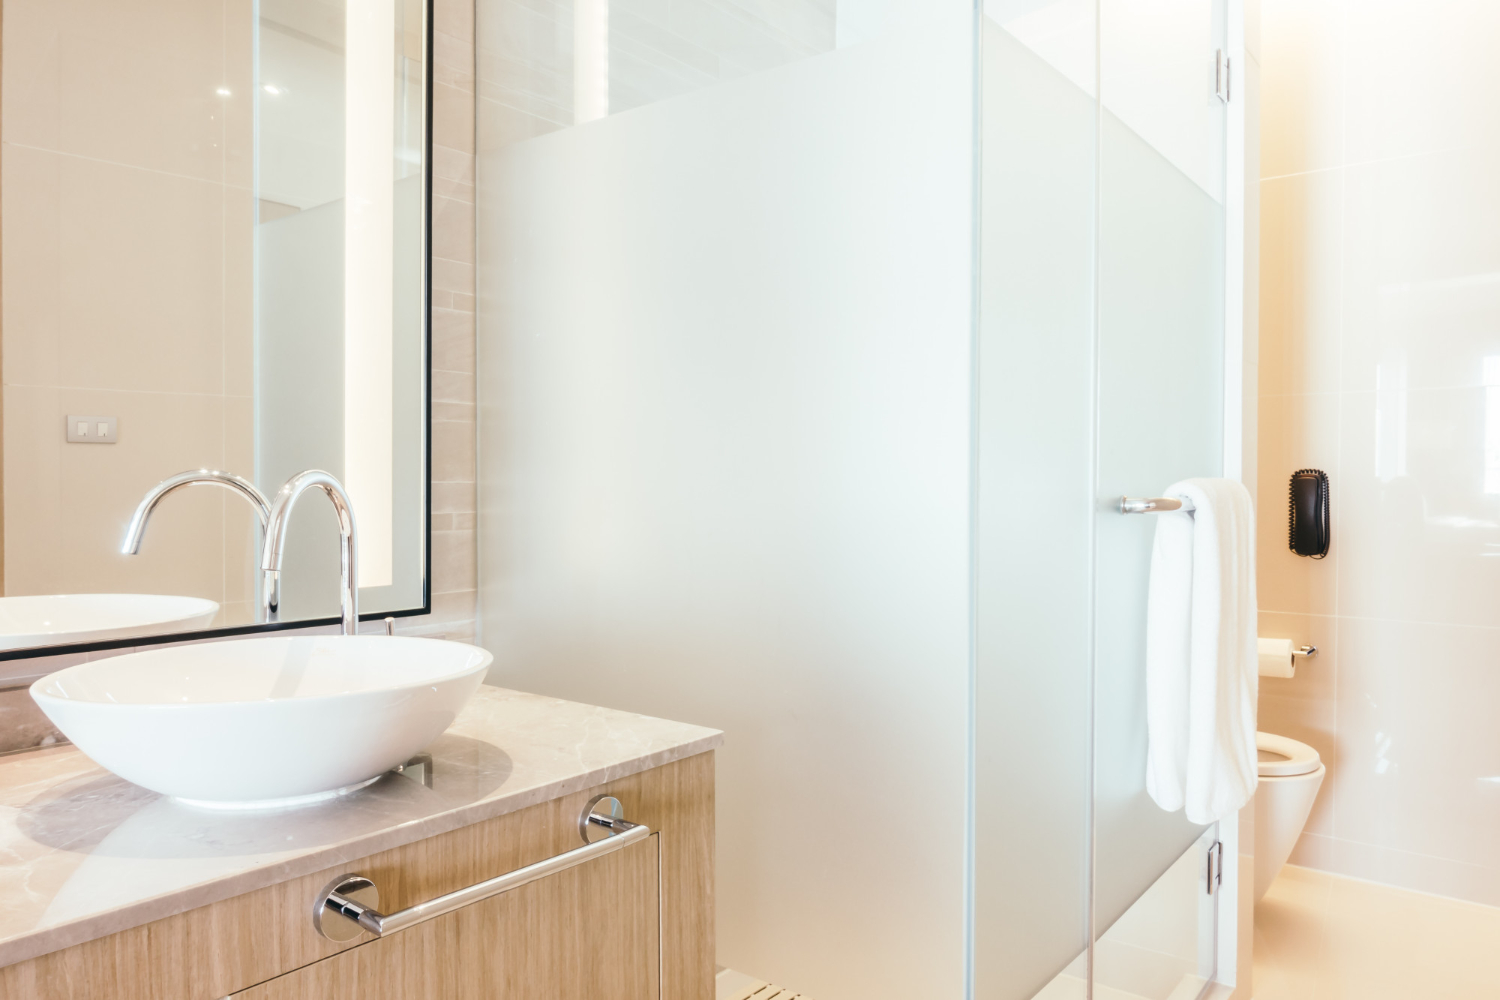 Tantangan dalam pembuatan kamar mandi minimalis ialah mengoptimalkan ukuran terbatas supaya tetap fungsional dan estetik.